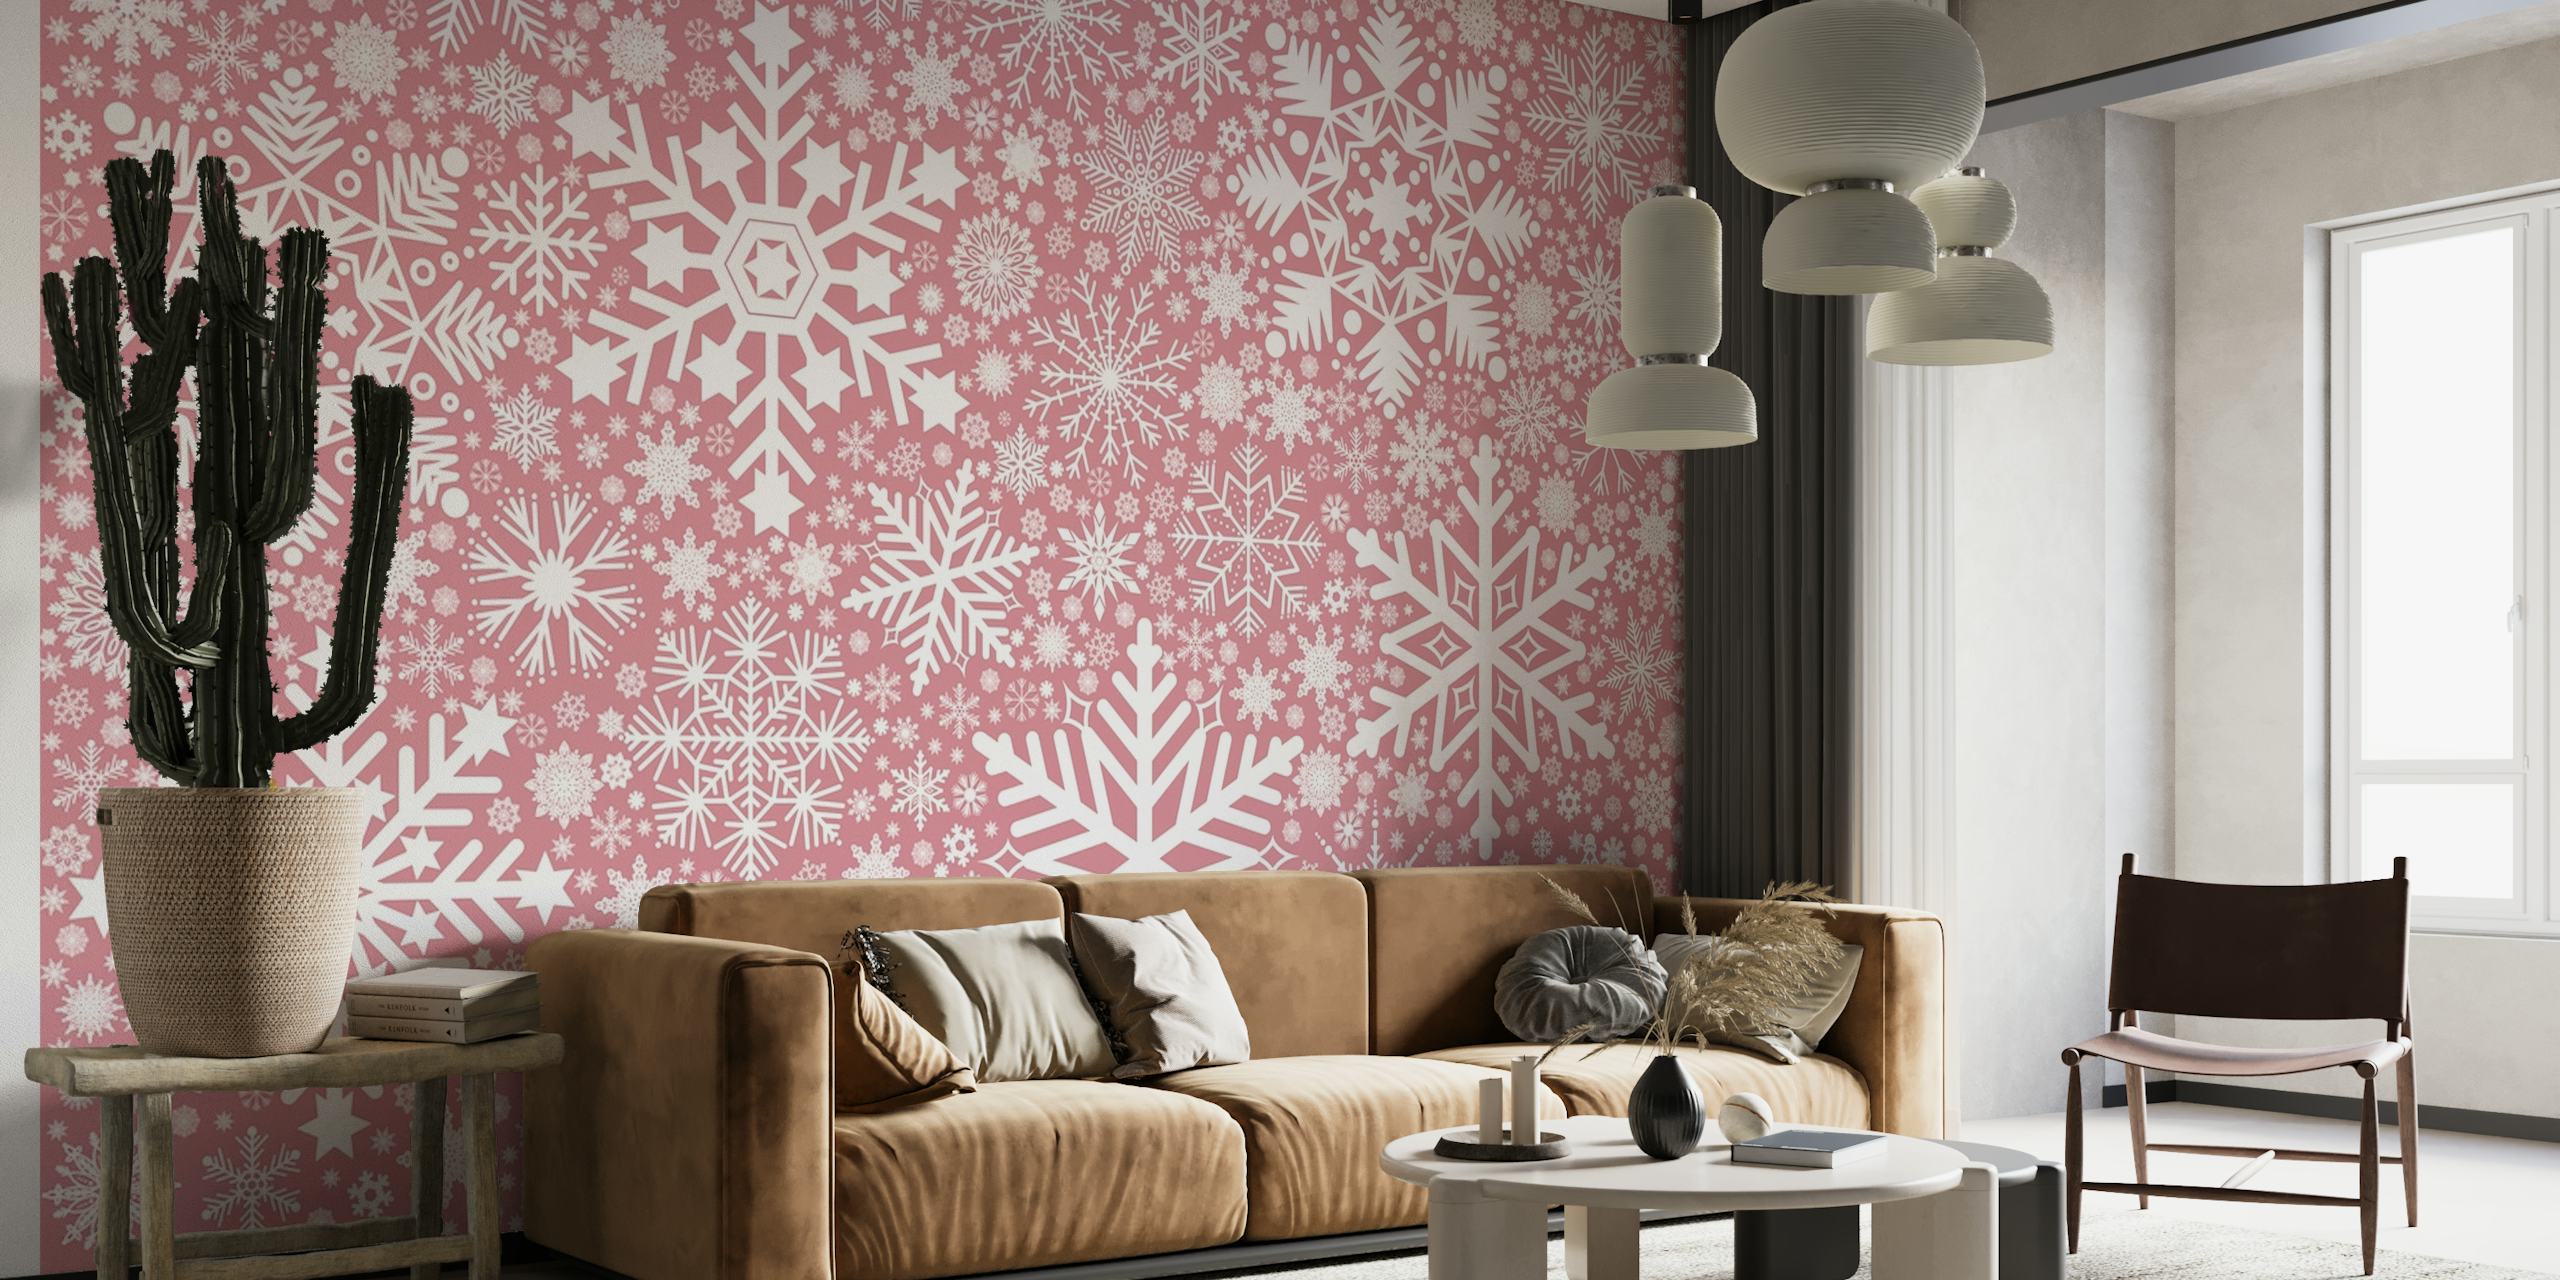 Tyylikäs vaaleanpunainen lumihiutalekuvioinen seinämaalaus viihtyisään sisustukseen